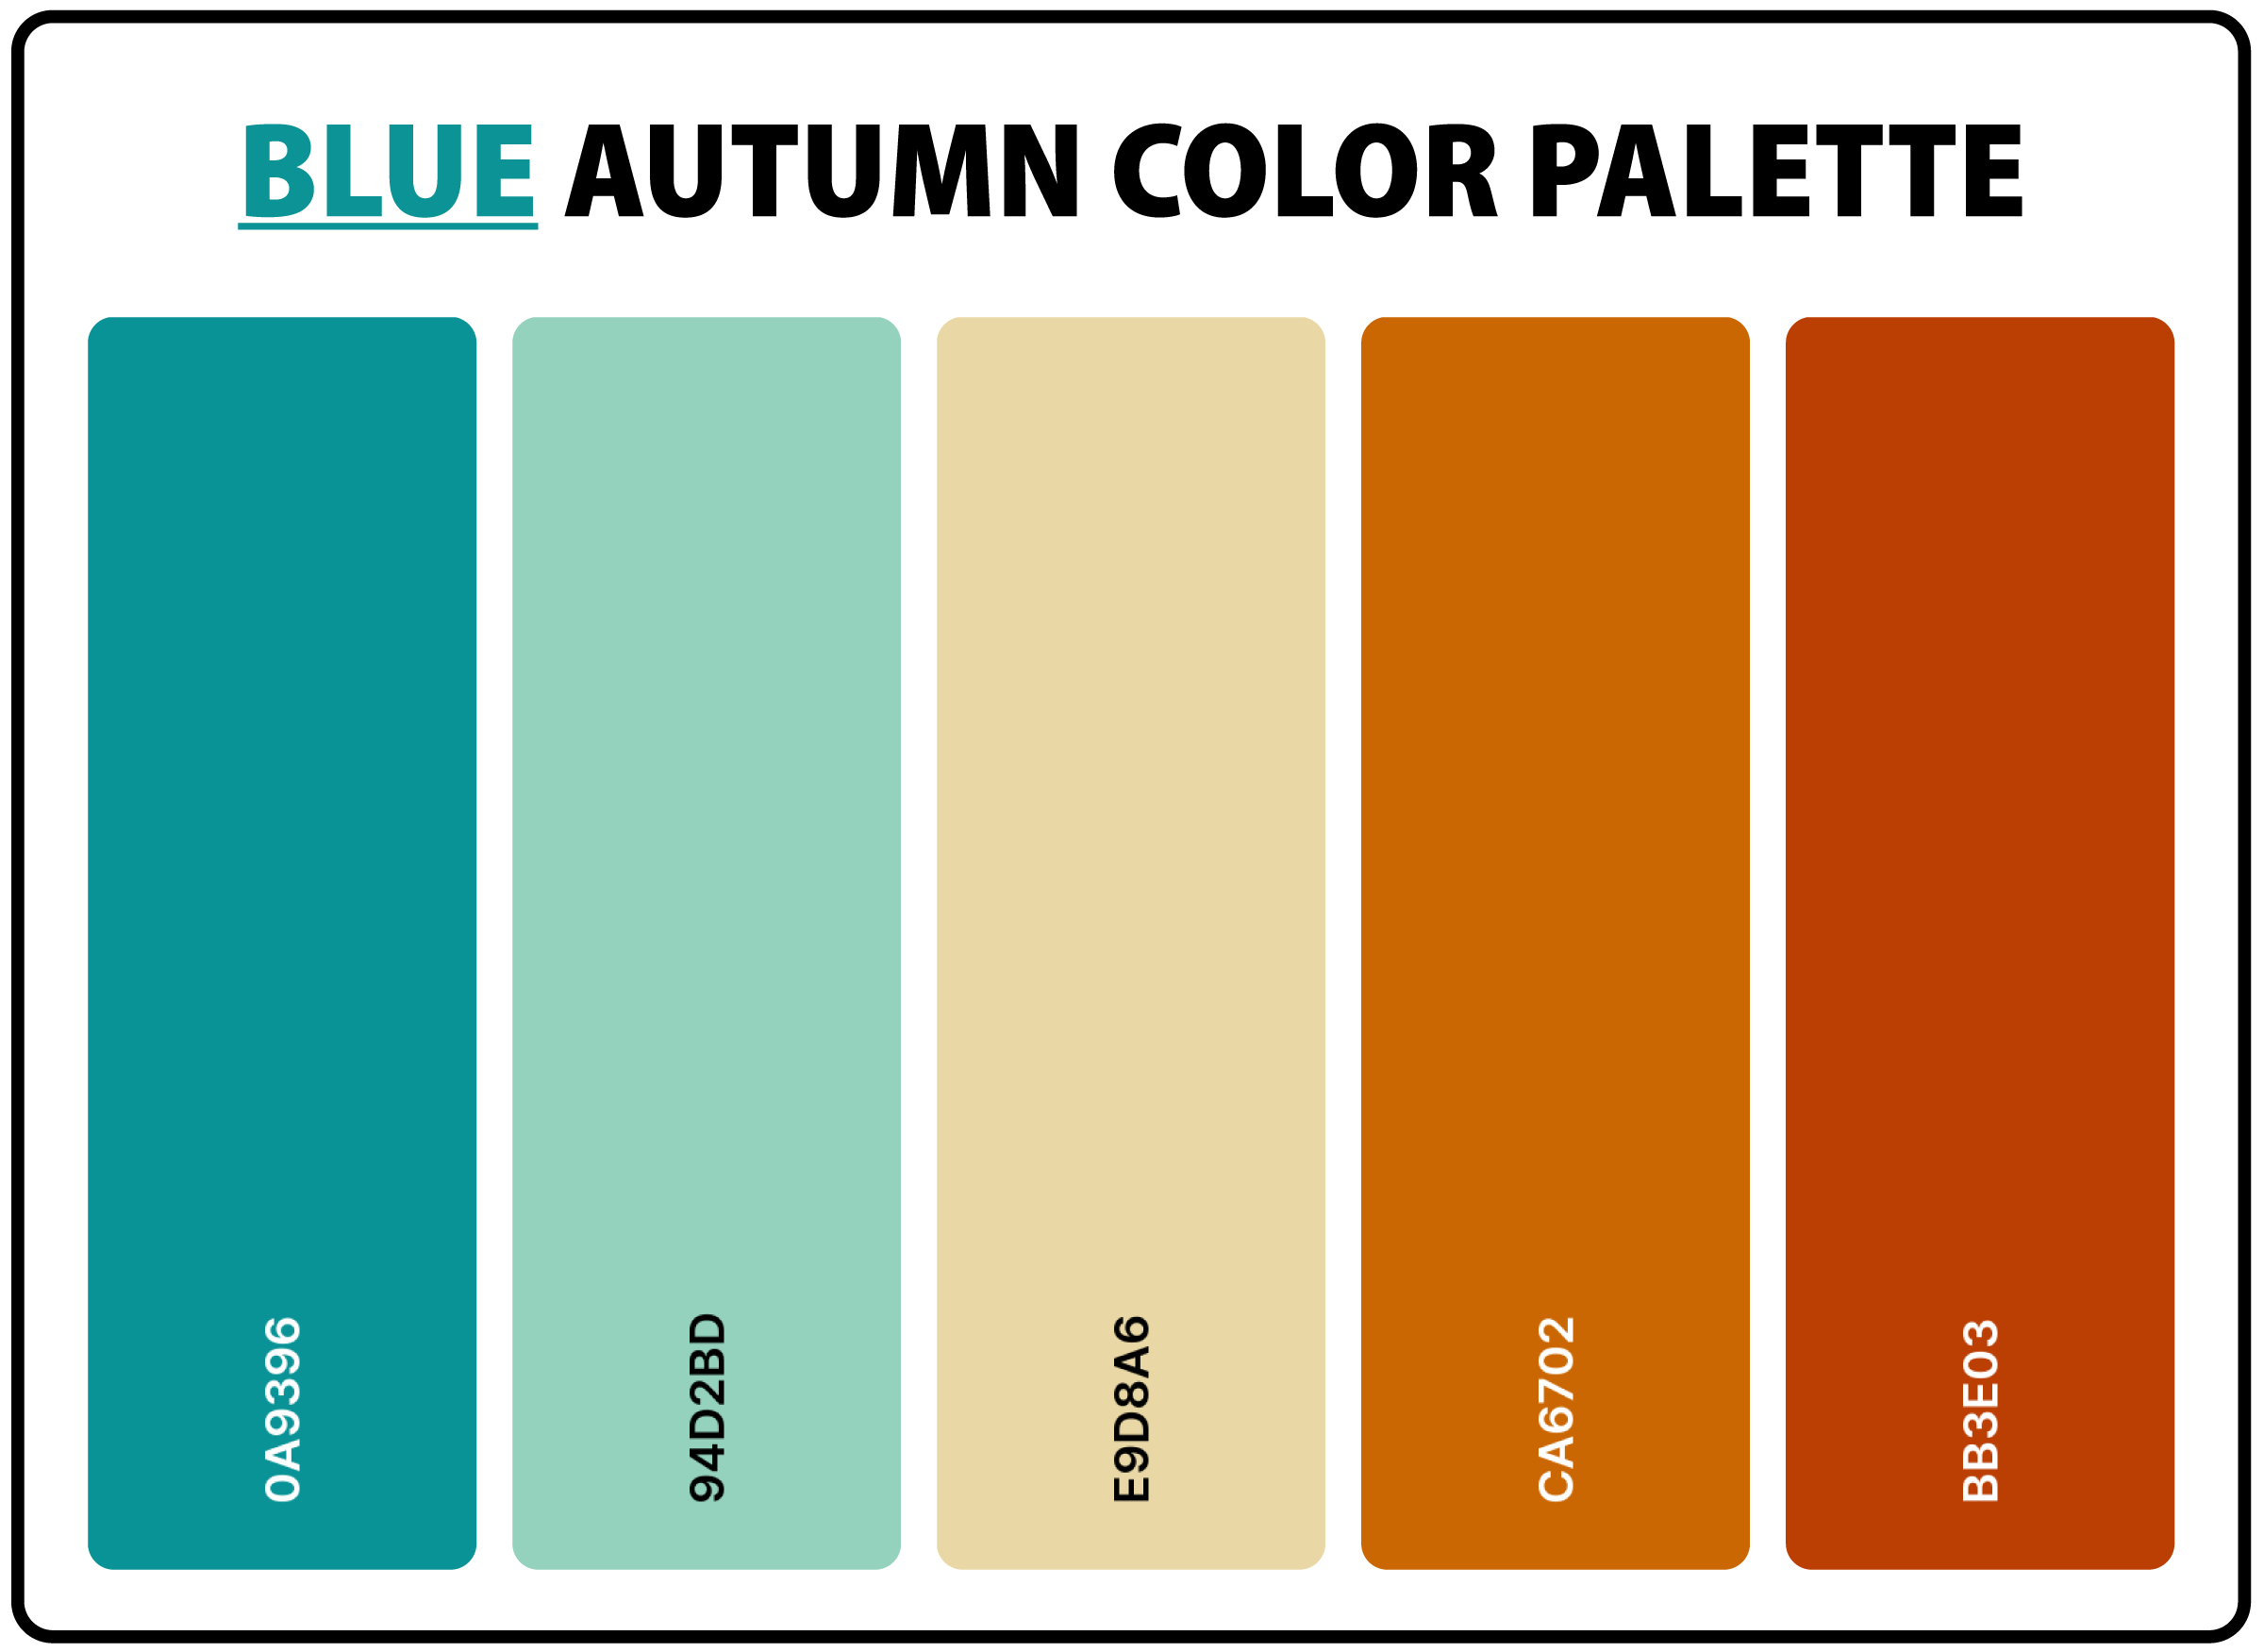 Blue-Autumn-Color-Palette-with-Hex-Codes